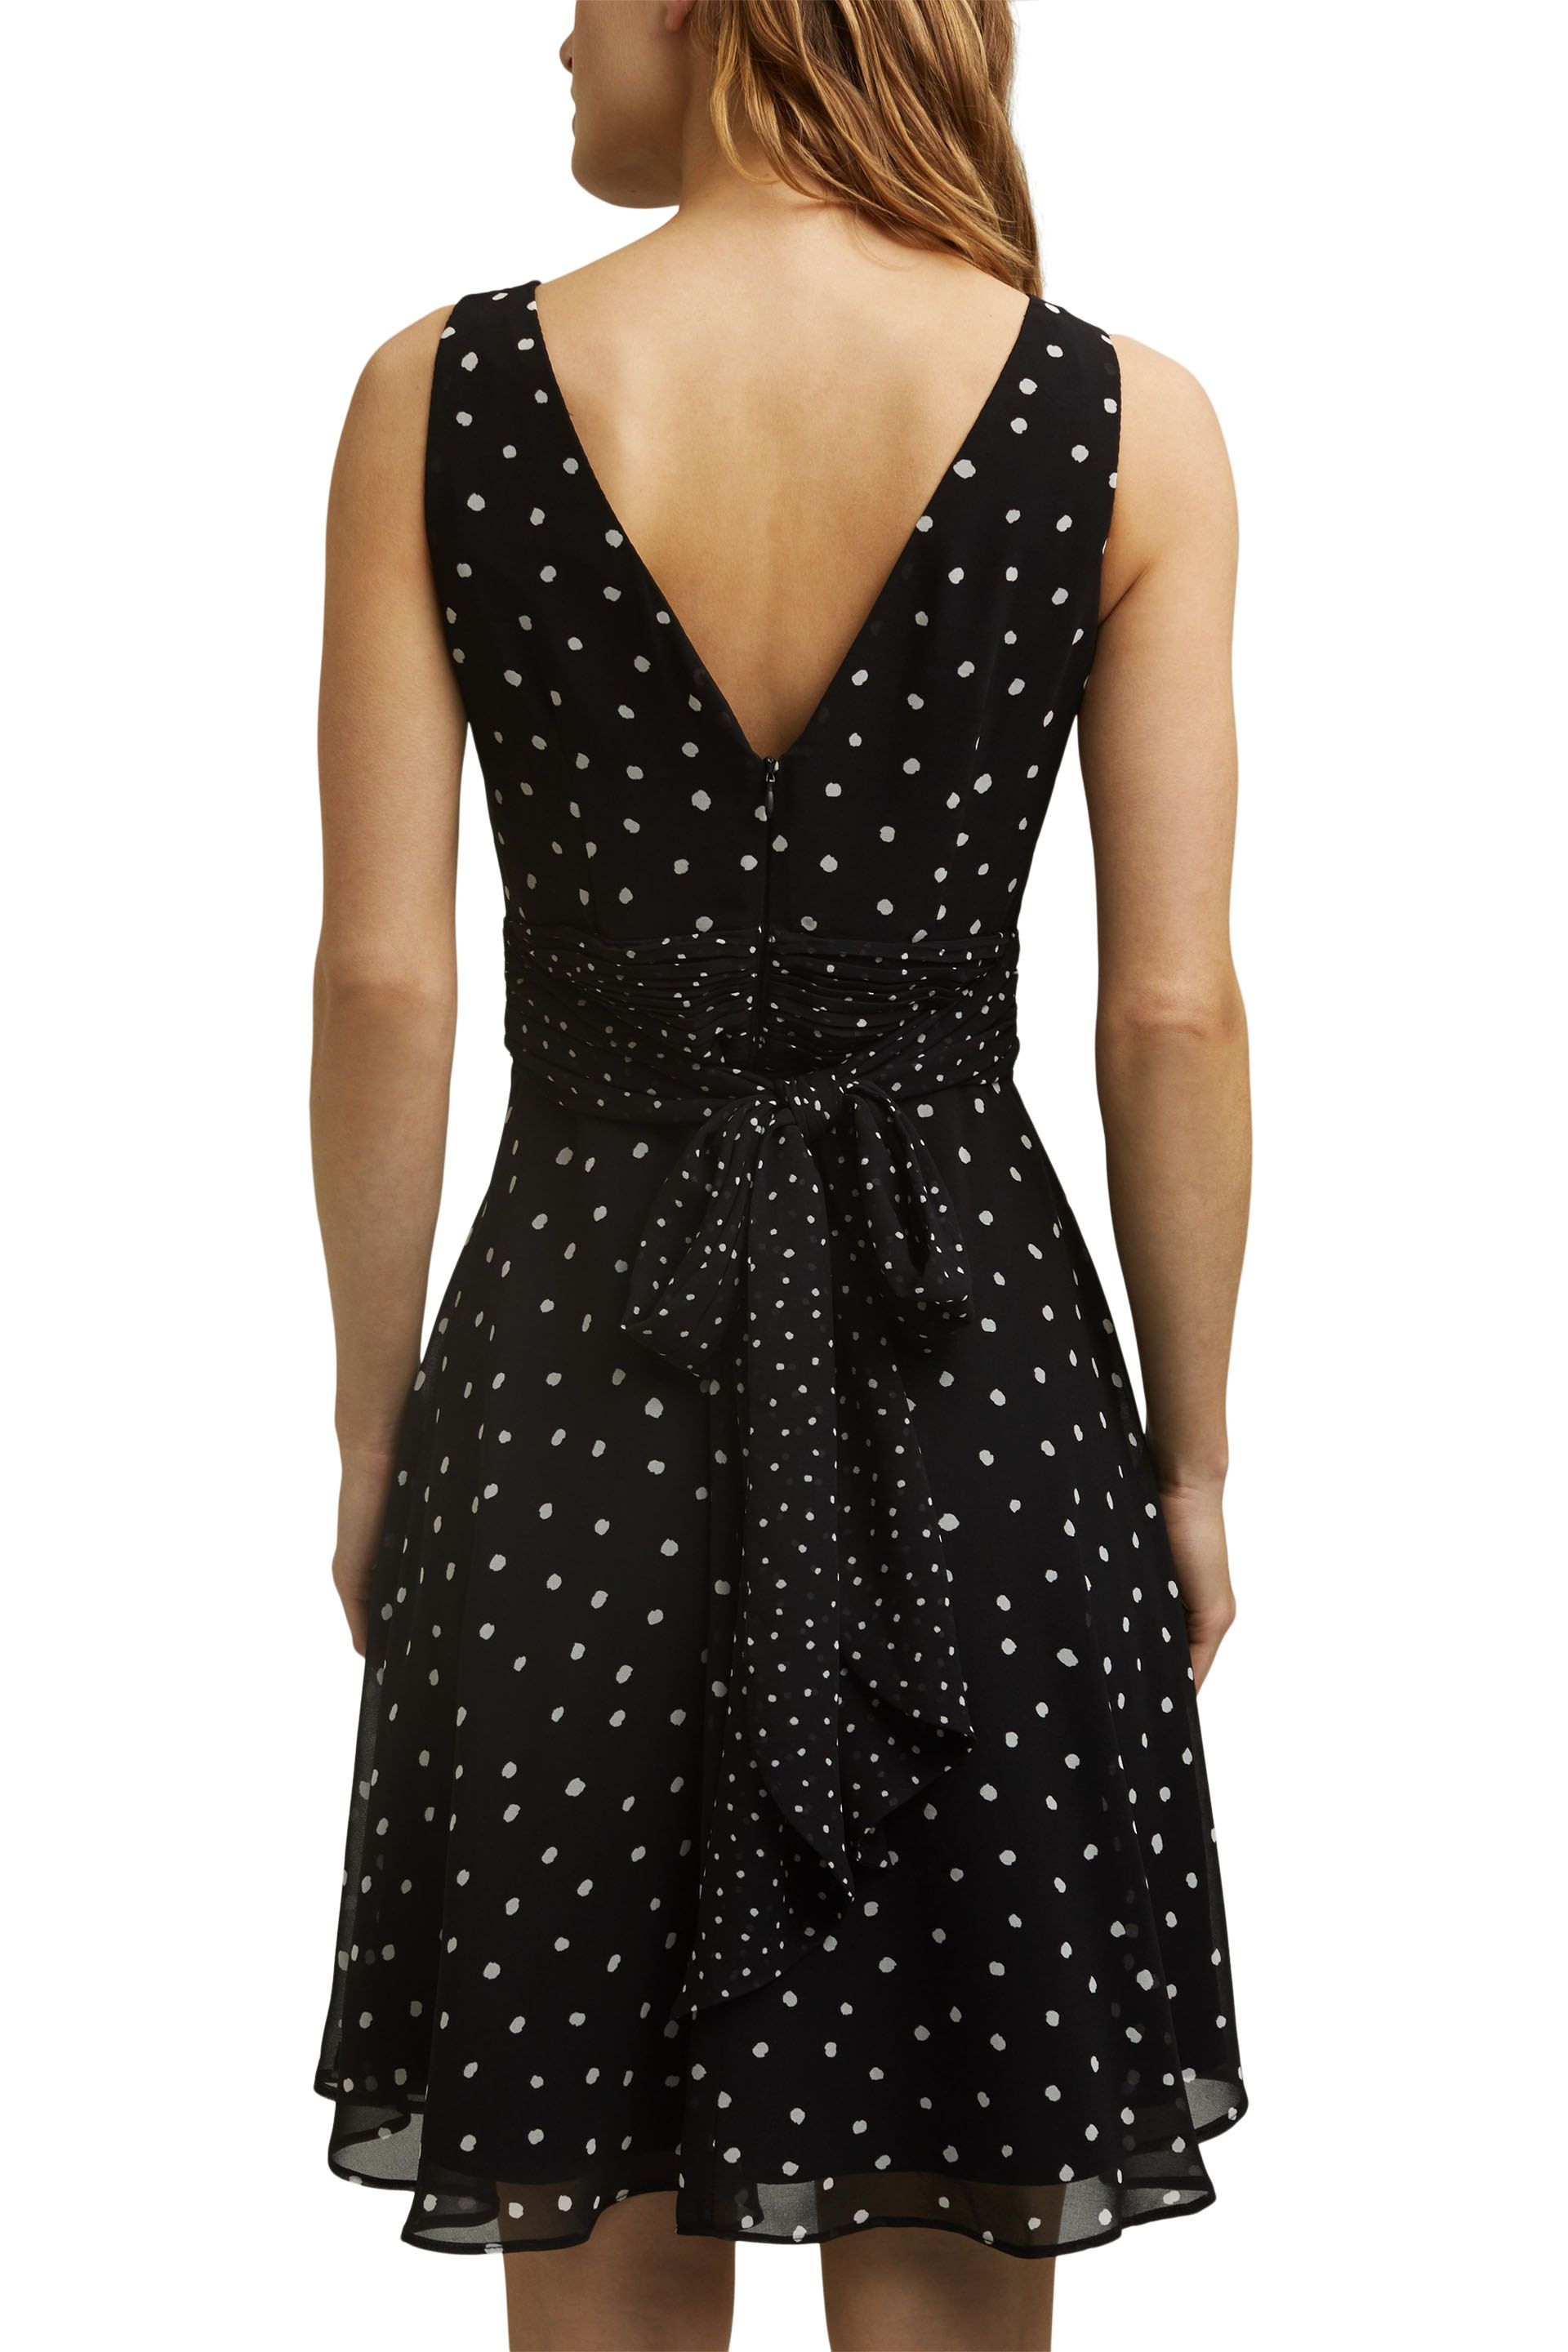 Esprit - Polka dot dress, Black, large image number 3